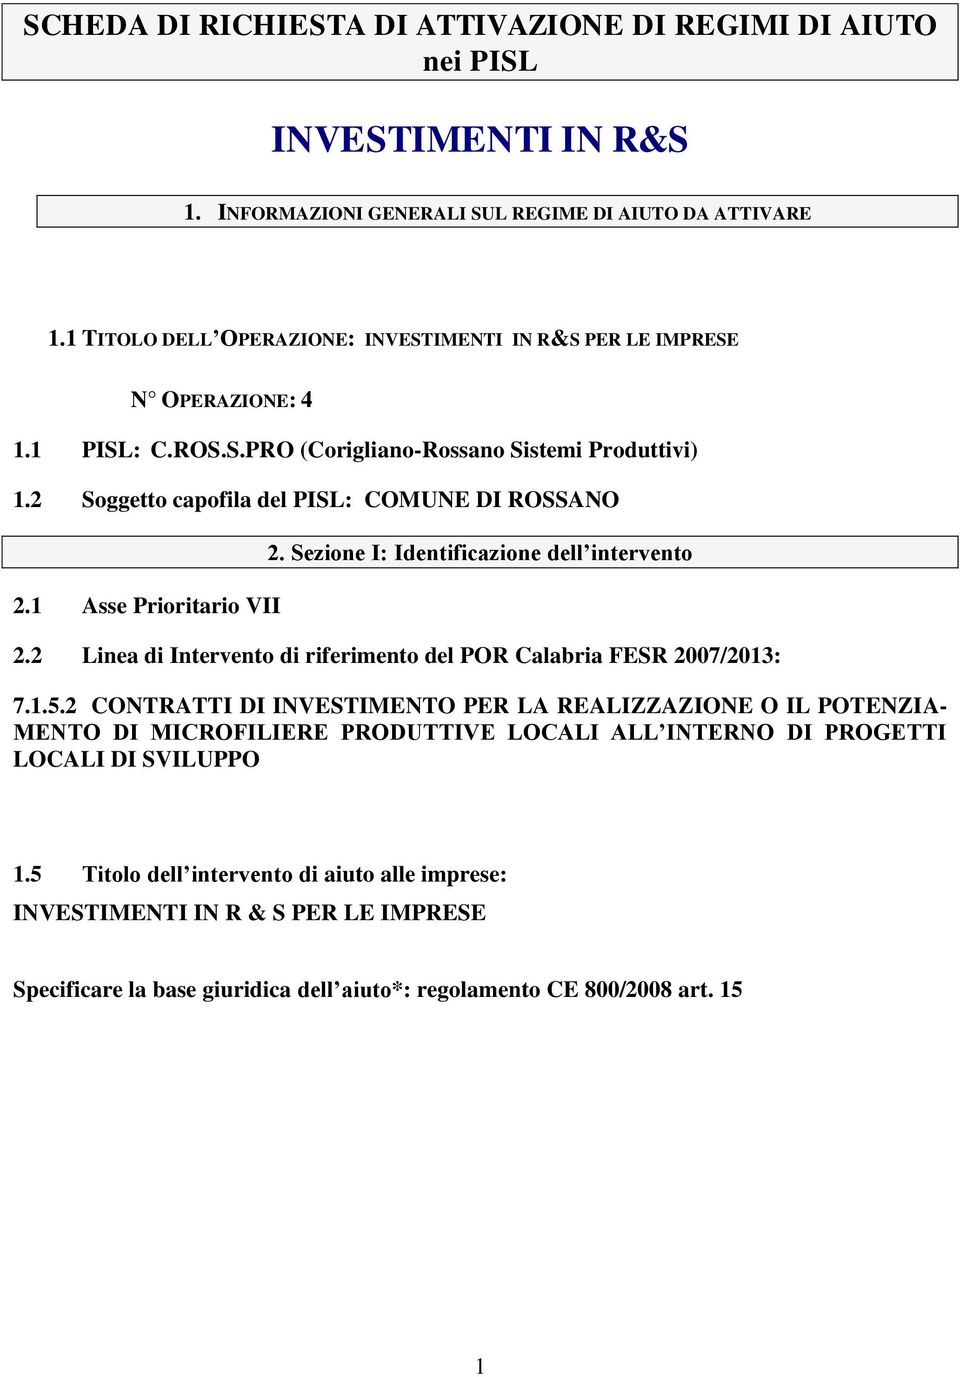 1 Asse Prioritario VII 2. Sezione I: Identificazione dell intervento 2.2 Linea di Intervento di riferimento del POR Calabria FESR 2007/2013: 7.1.5.